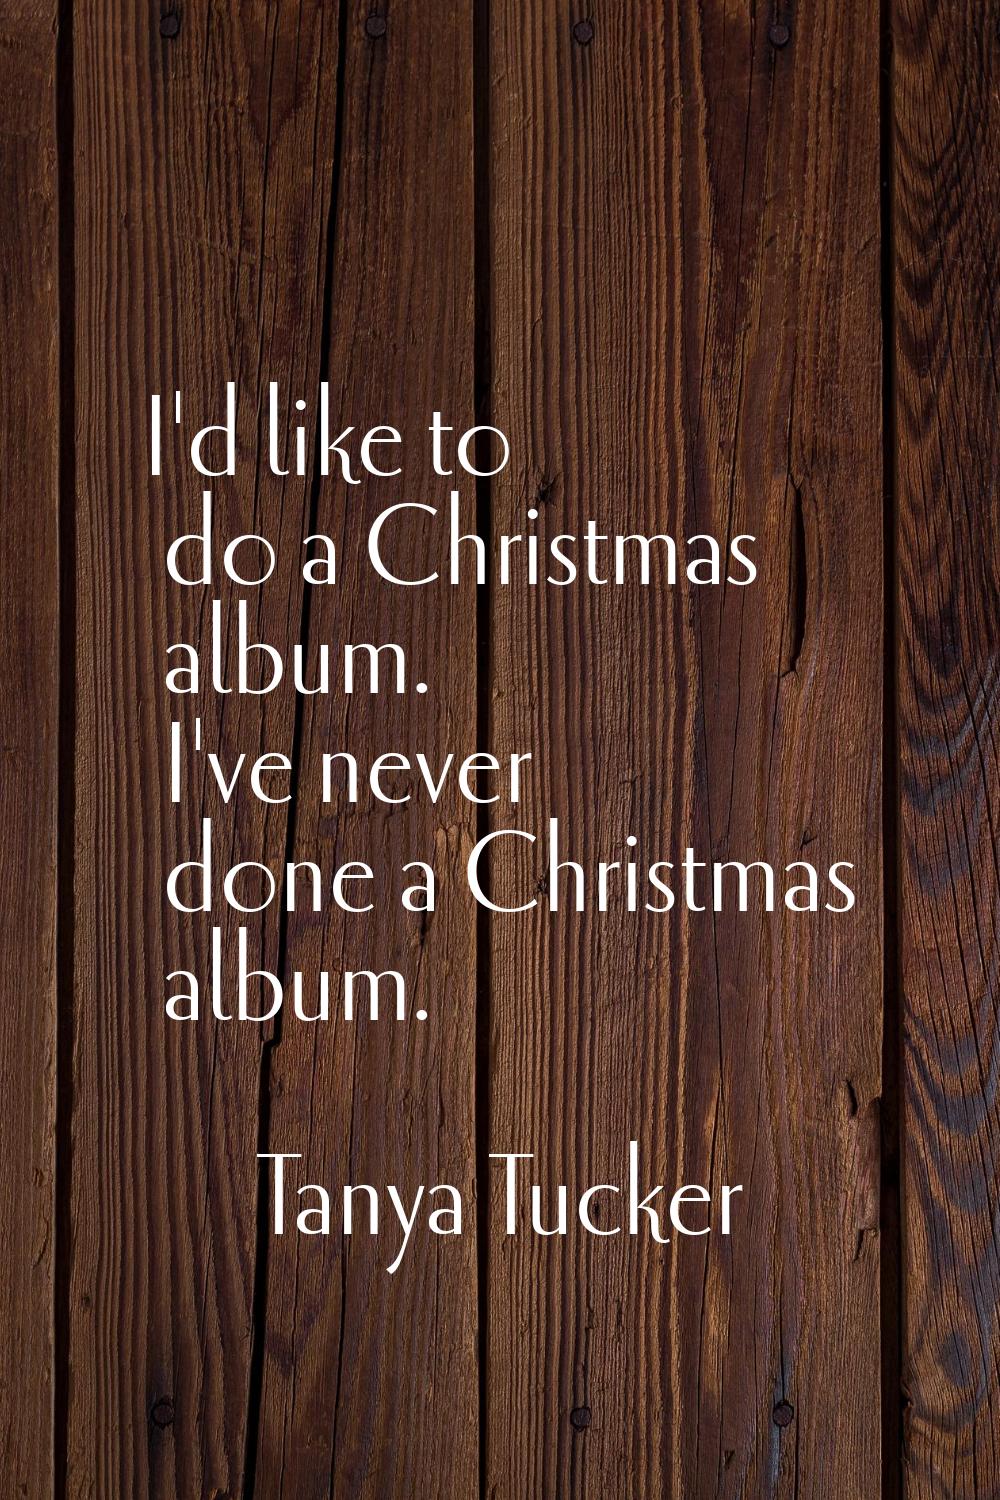 I'd like to do a Christmas album. I've never done a Christmas album.